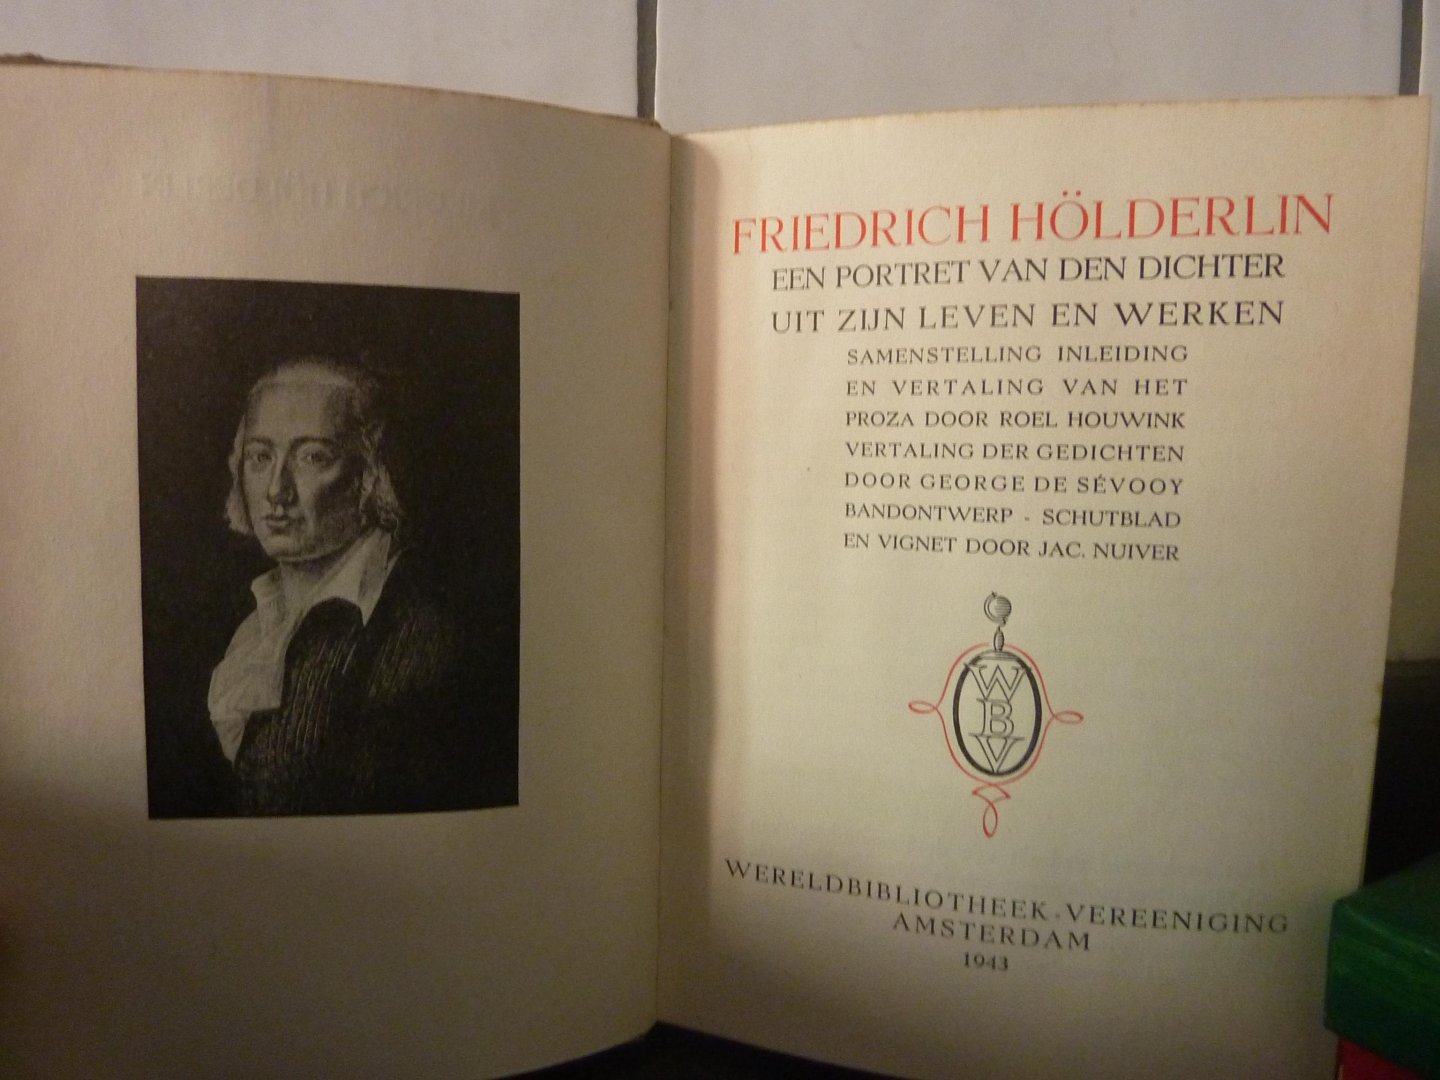 Hölderlin, Friedrich - Een portret van den dichter uit zijn werken en brieven